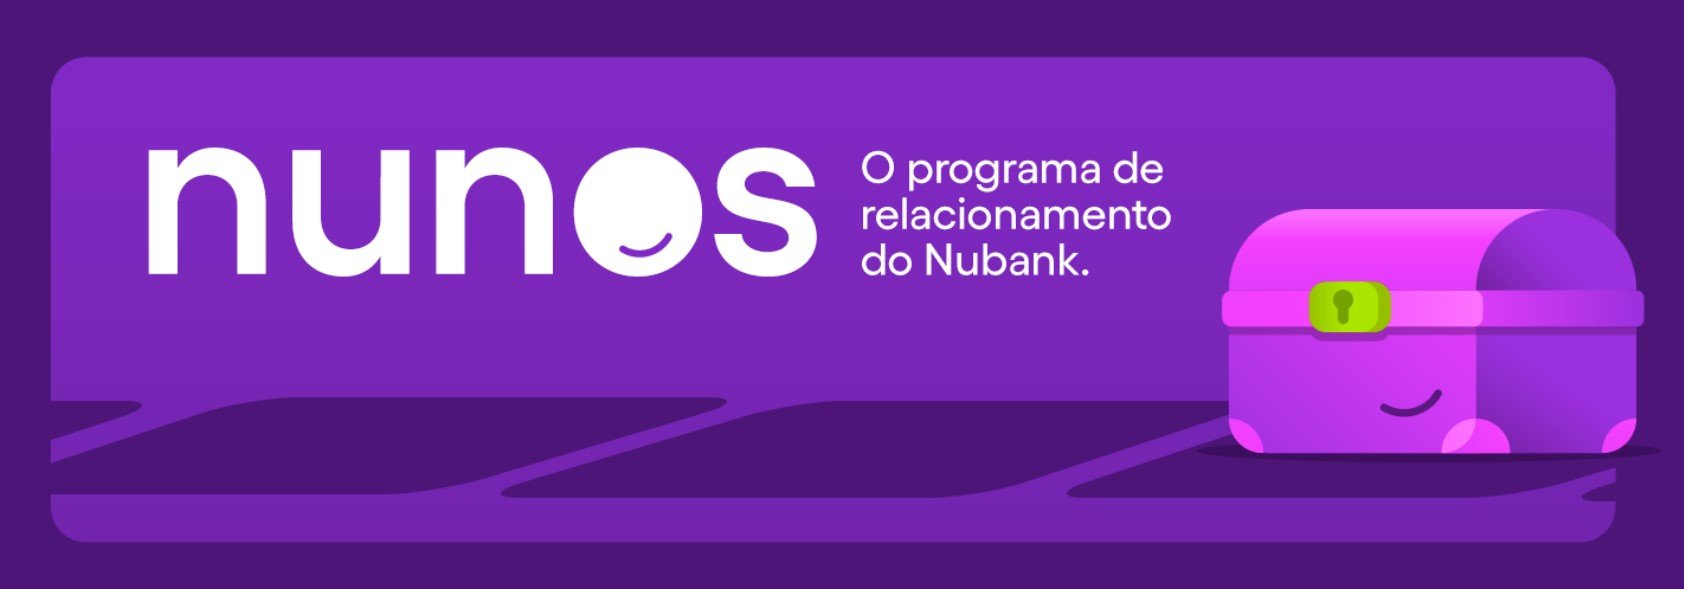 Nubank Nunos